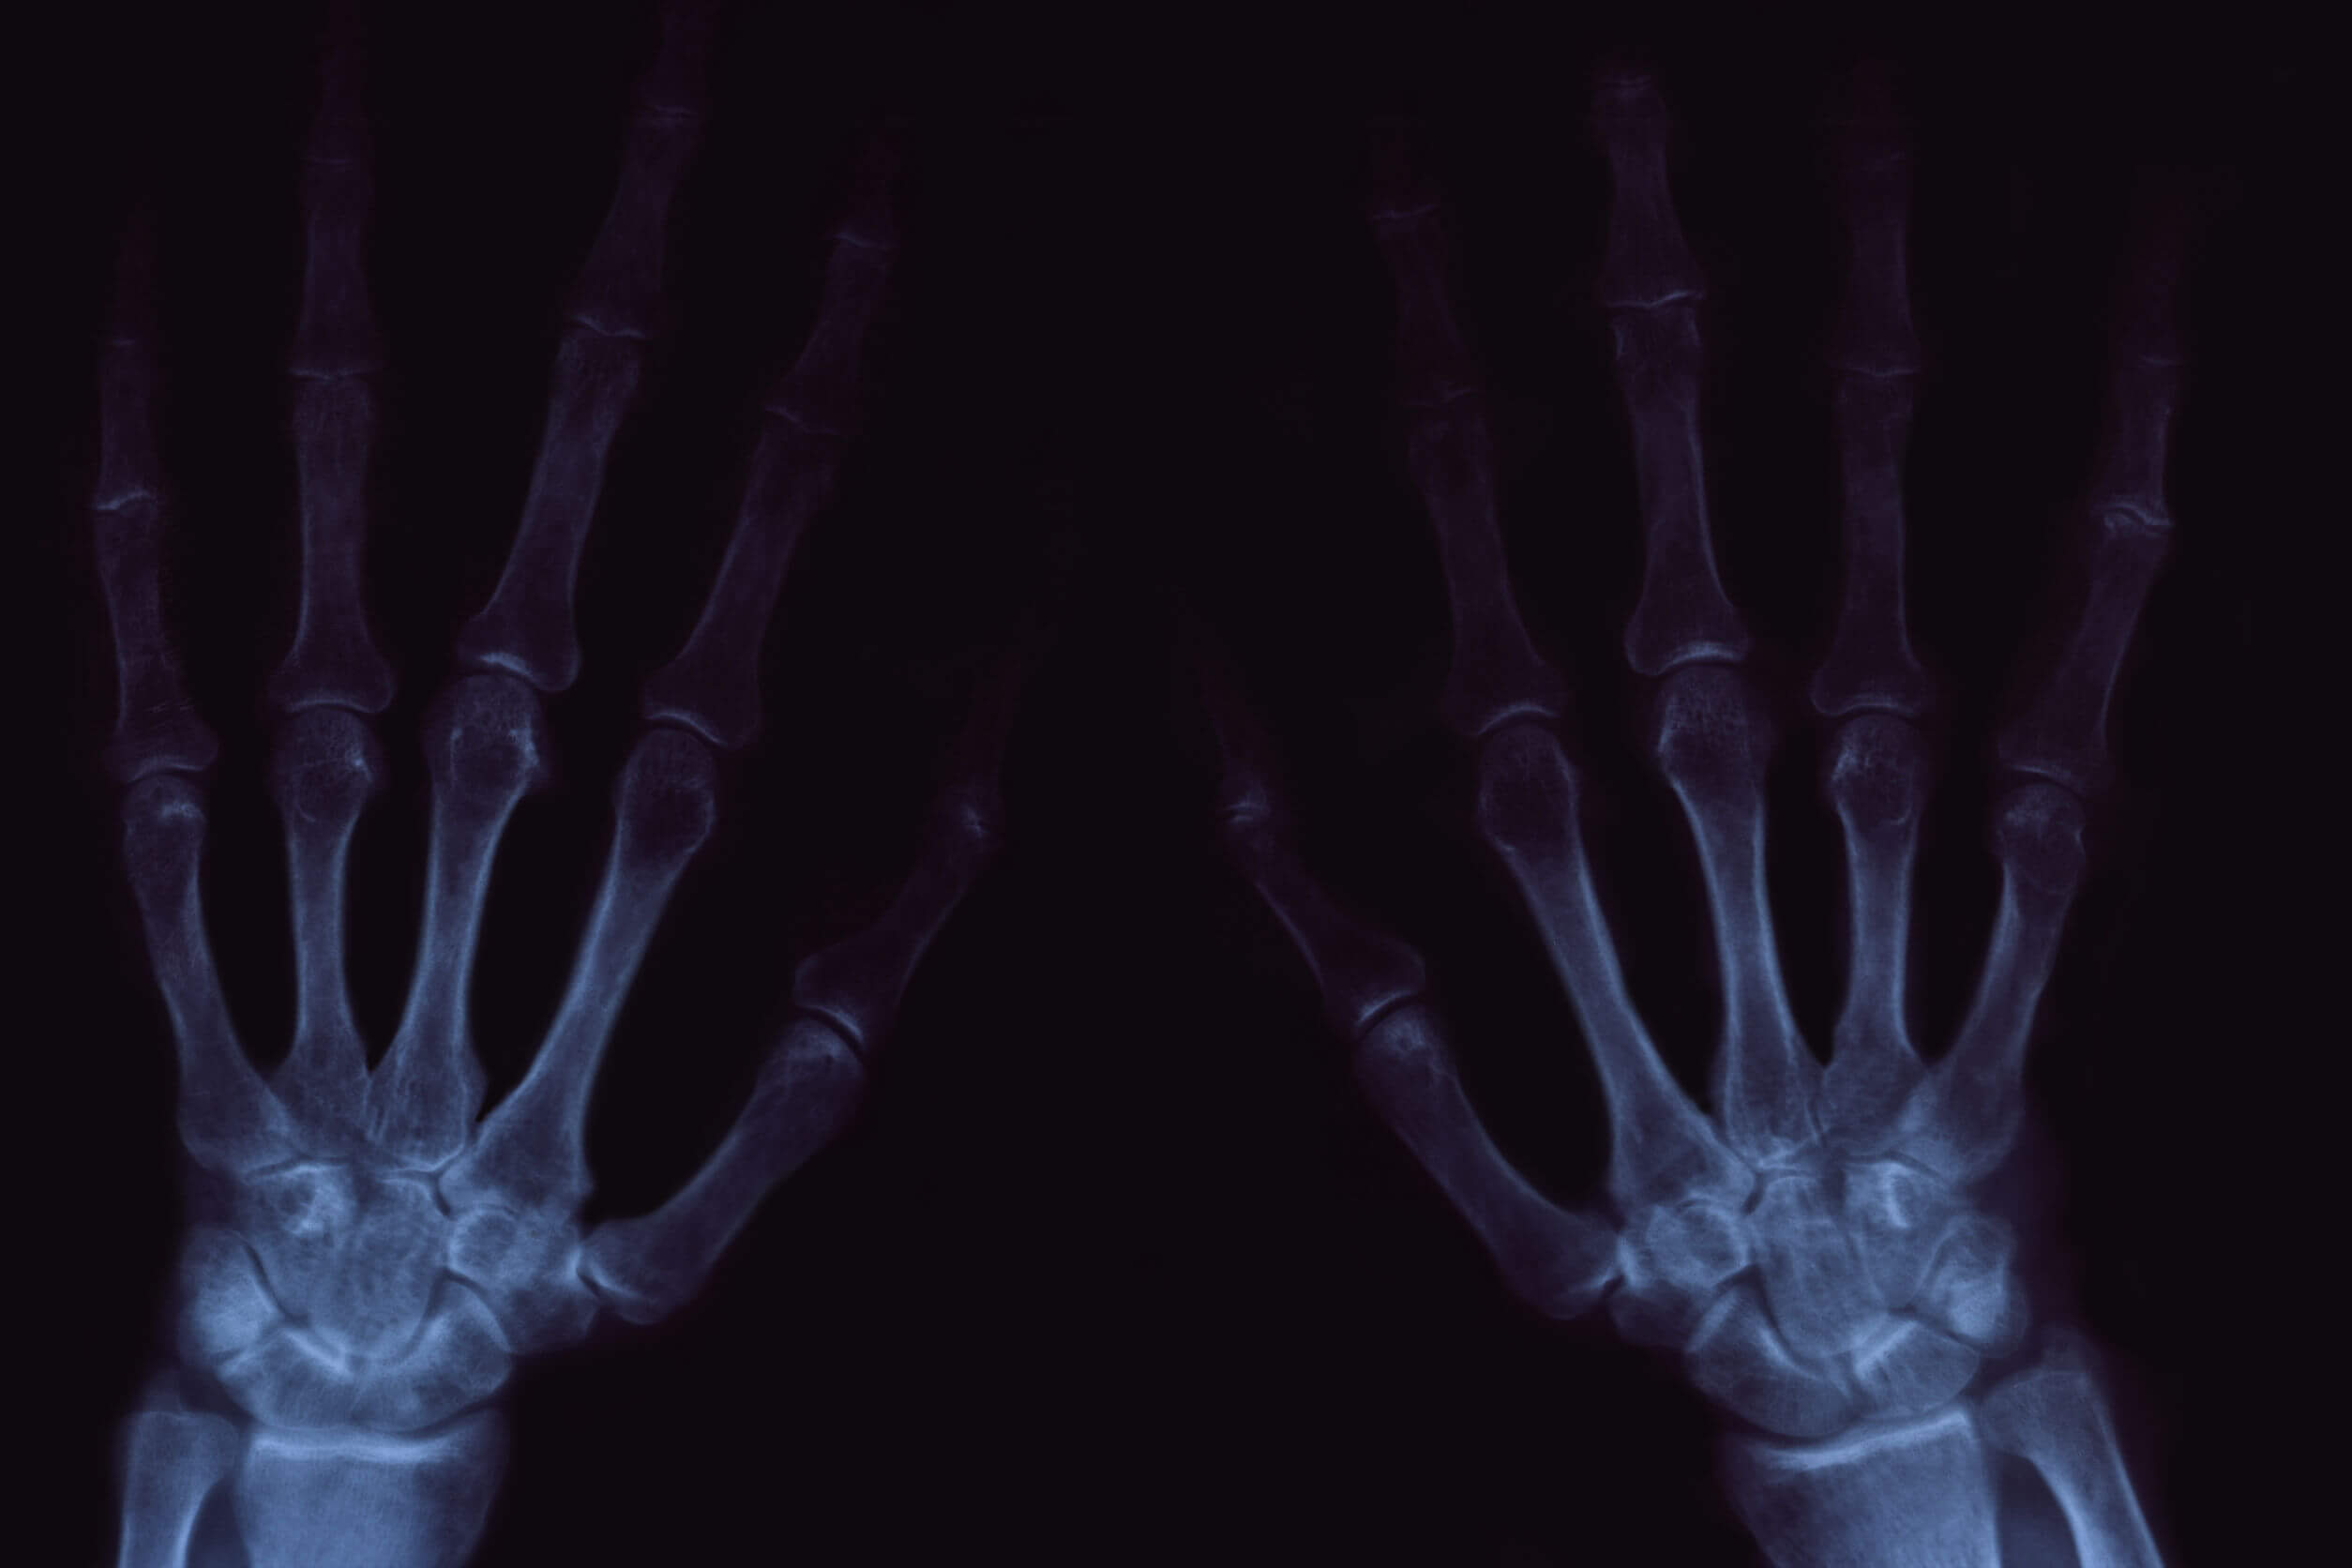 Lo scricchiolio delle articolazioni può essere doloroso nei casi di artrosi.